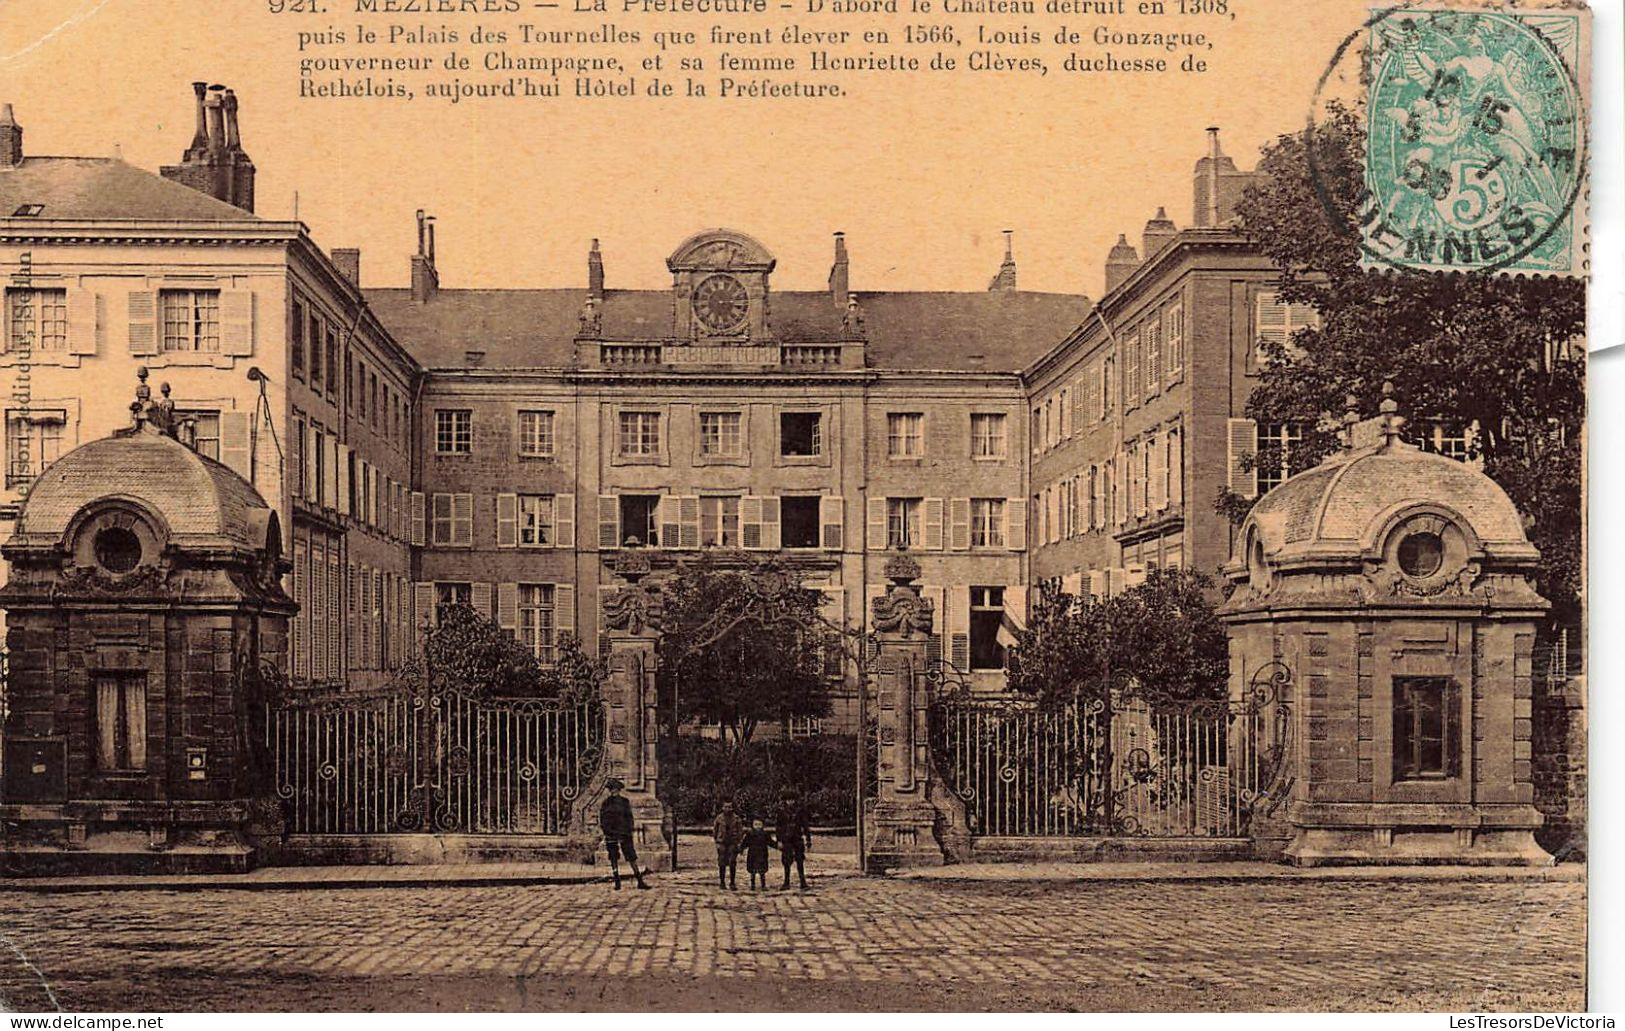 SUISSE - Mezieres - La Prefecture - Le Chateau Détruit En 1308 - Carte Postale Ancienne - Jorat-Mézières